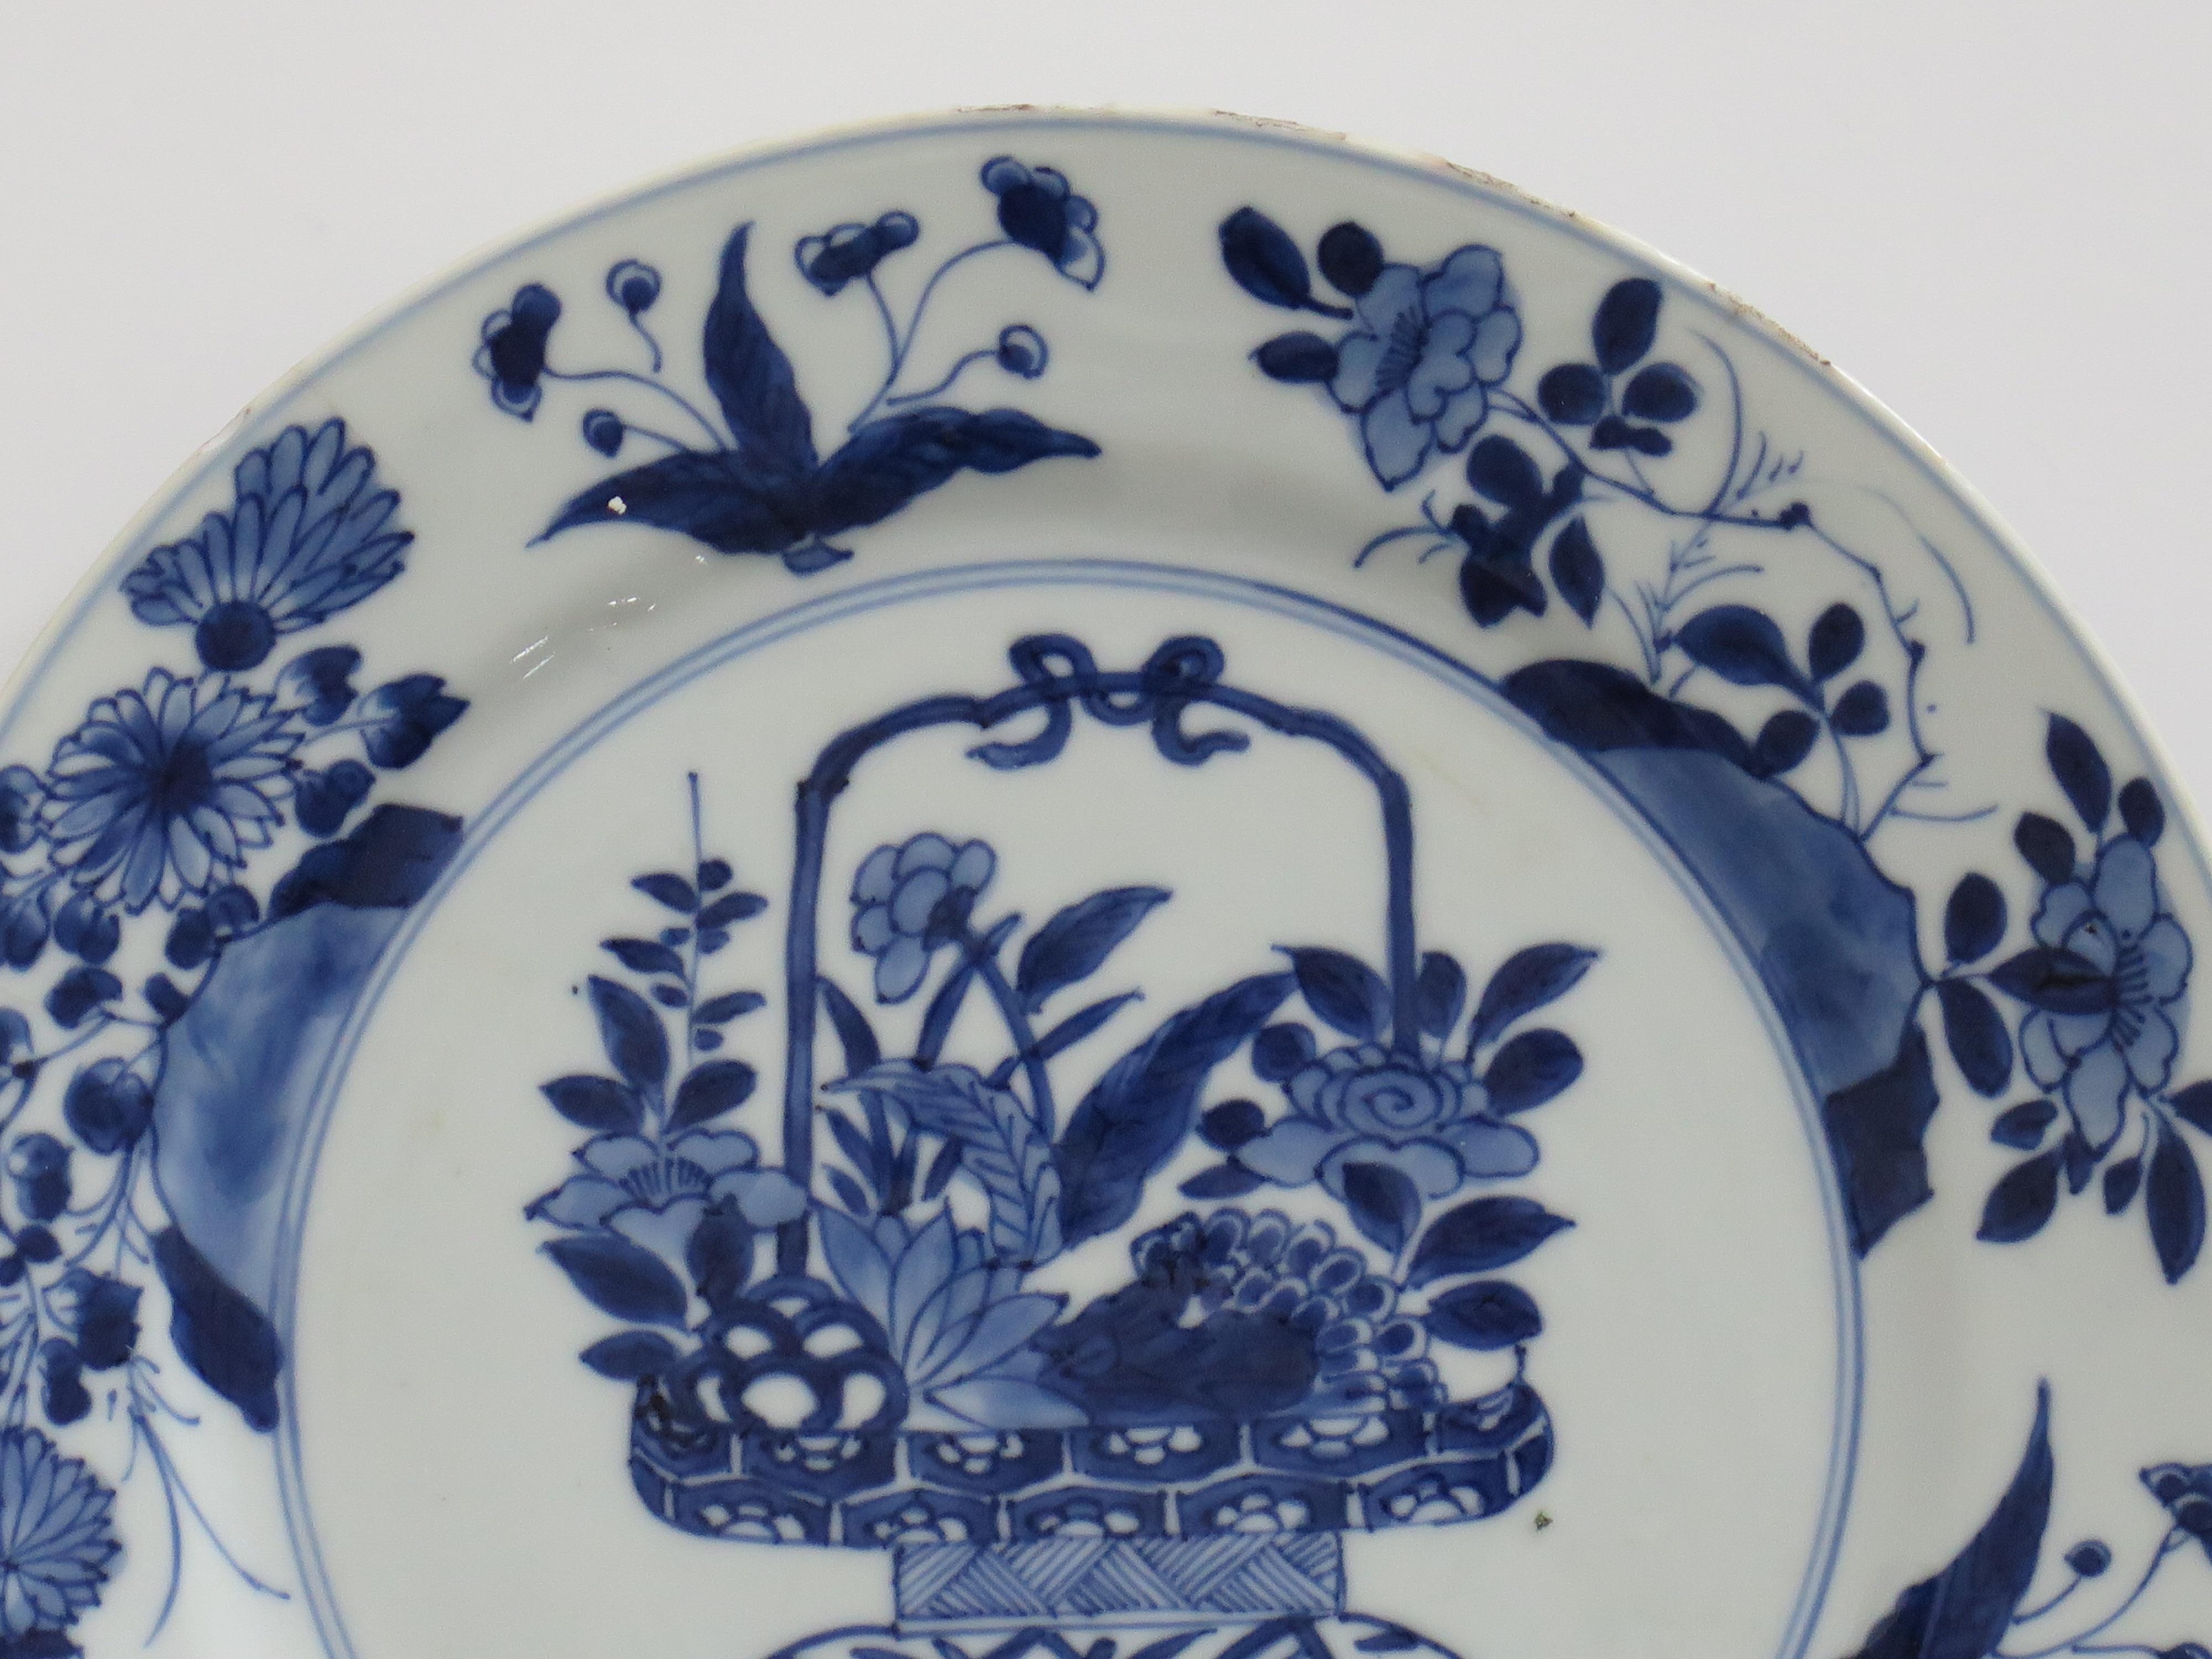 Dies ist ein wunderschön handbemalter chinesischer Porzellanteller in Blau und Weiß aus der Qing, Kangxi Periode, 1662-1722.

Der Teller ist fein getöpfert mit einem sorgfältig geschnittenen Bodenrand und einer schönen, reichhaltigen glasigen, sehr